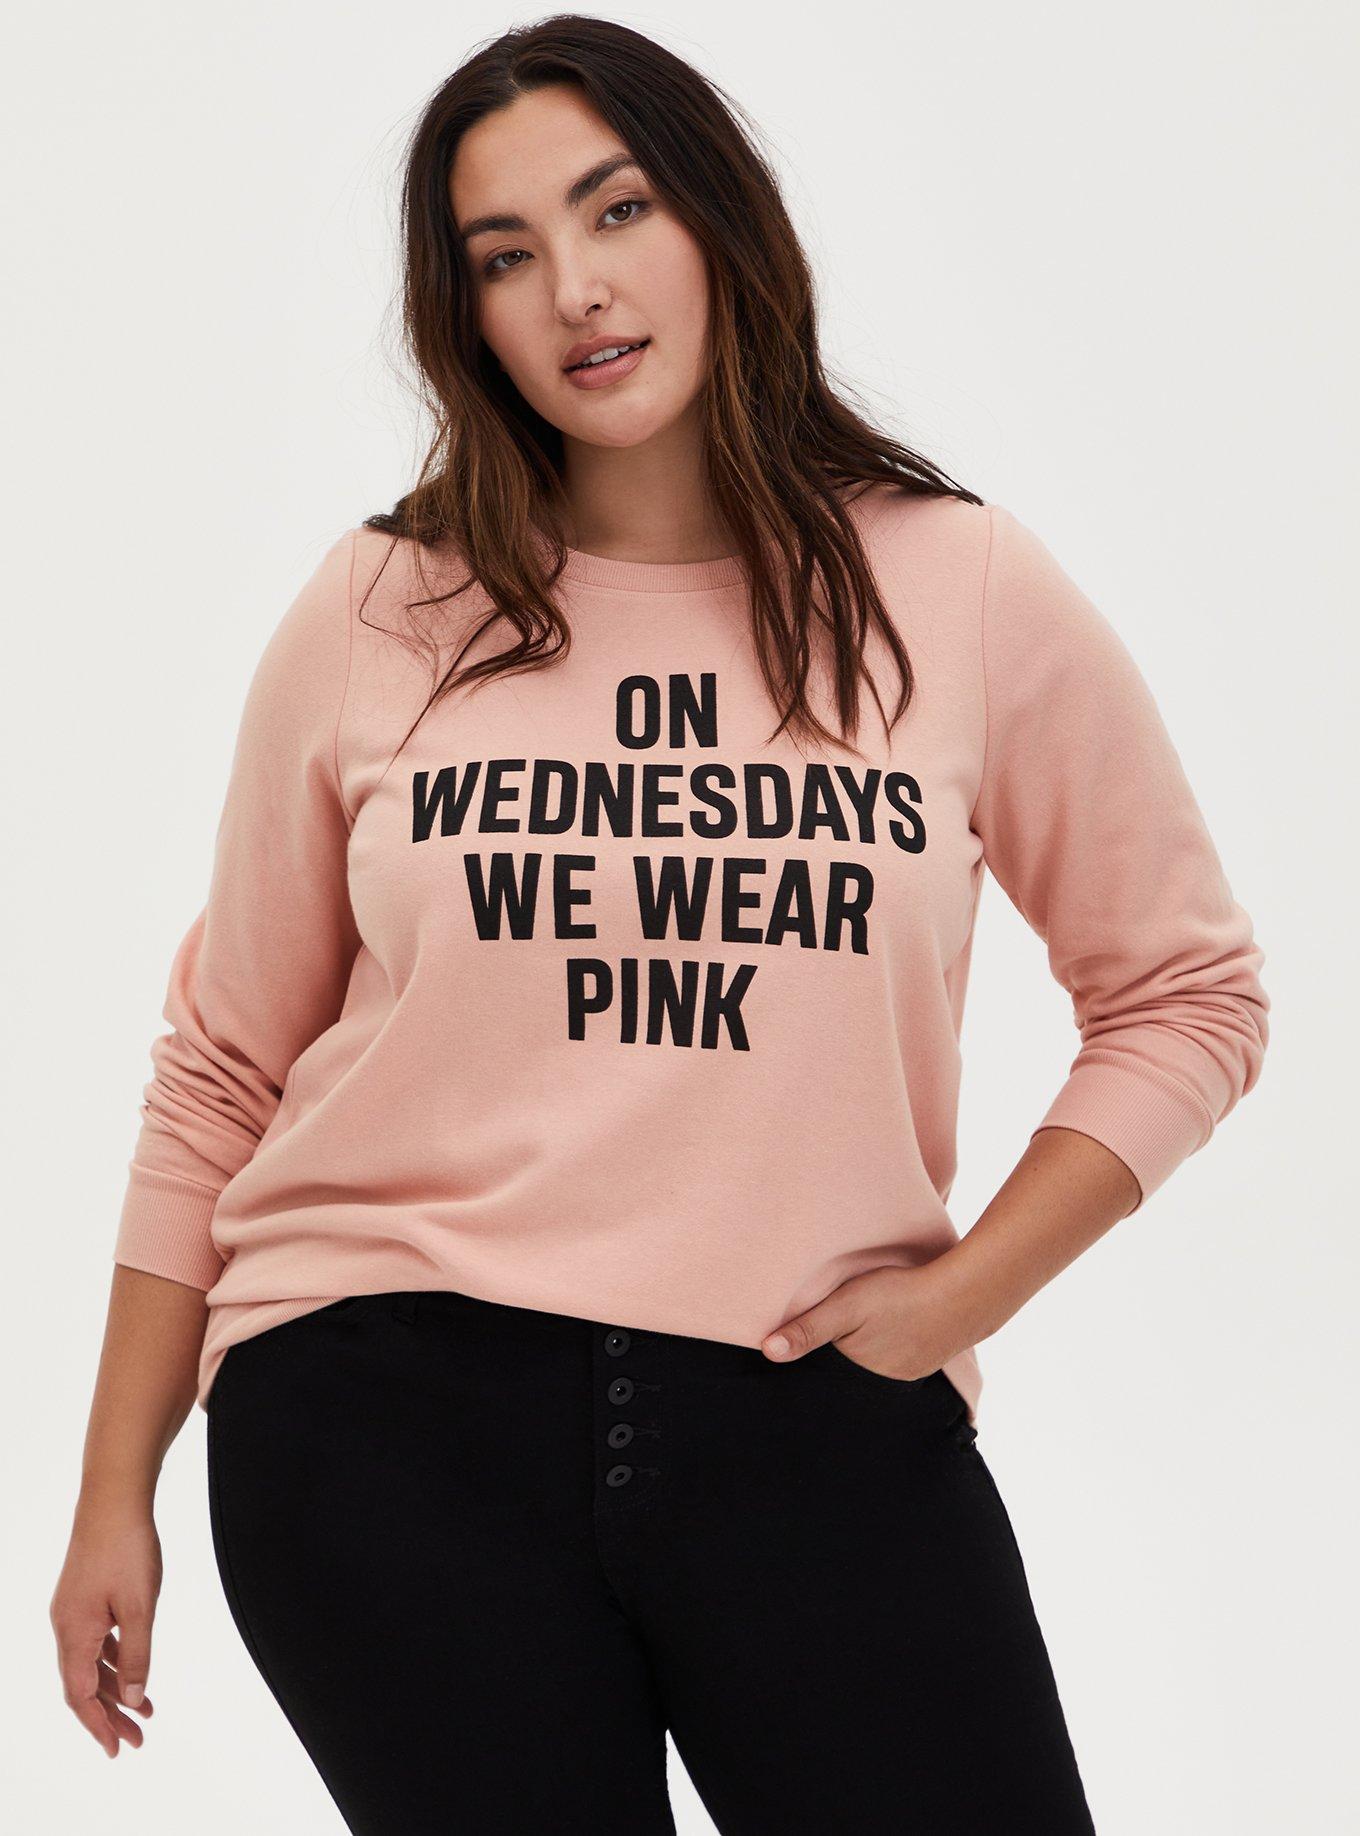 Plus Size - Mean Girls Pink Fleece Crew Sweatshirt - Torrid